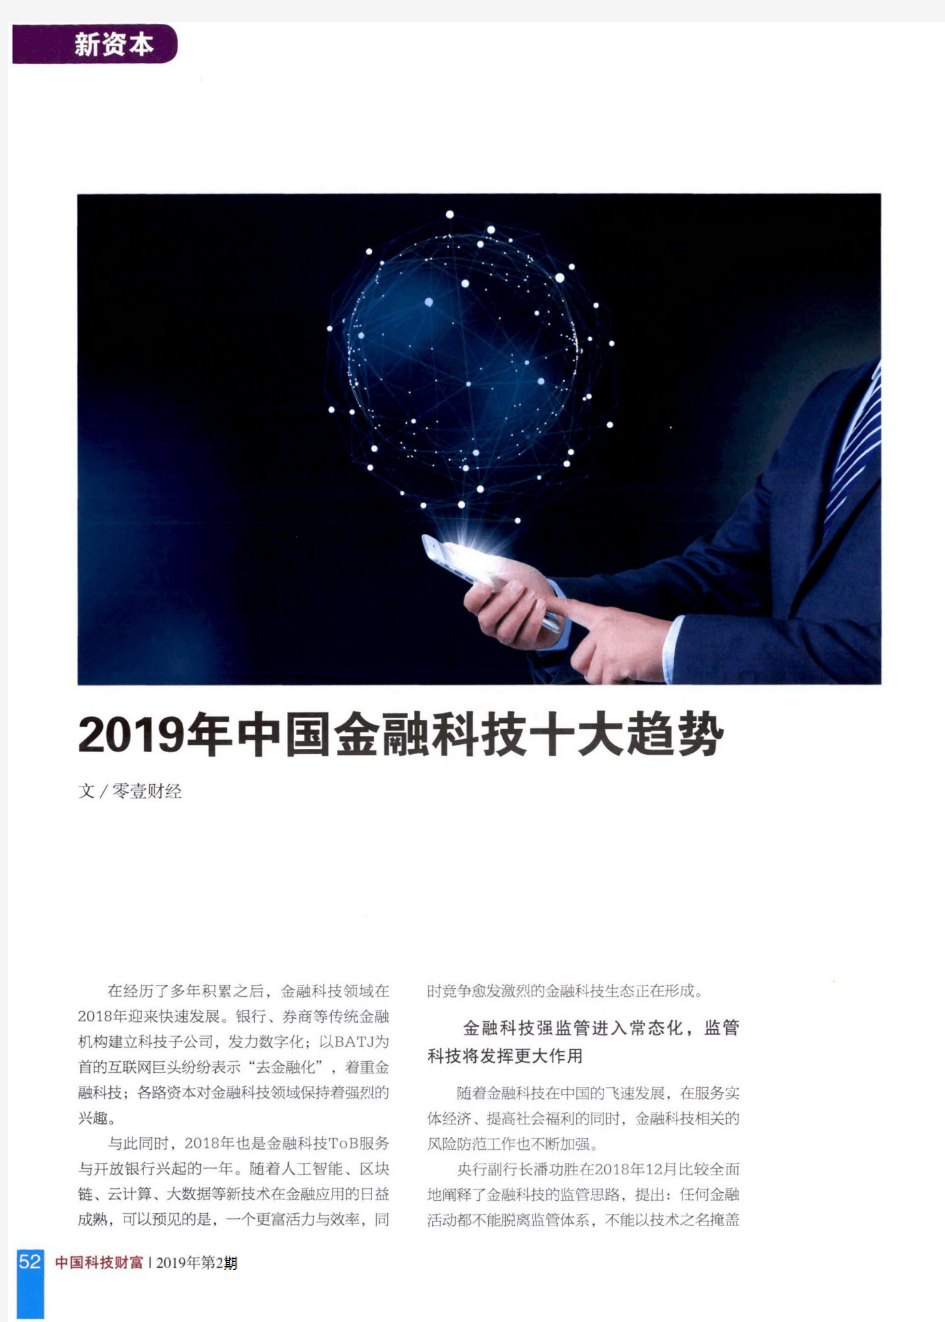 2019年中国金融科技十大趋势